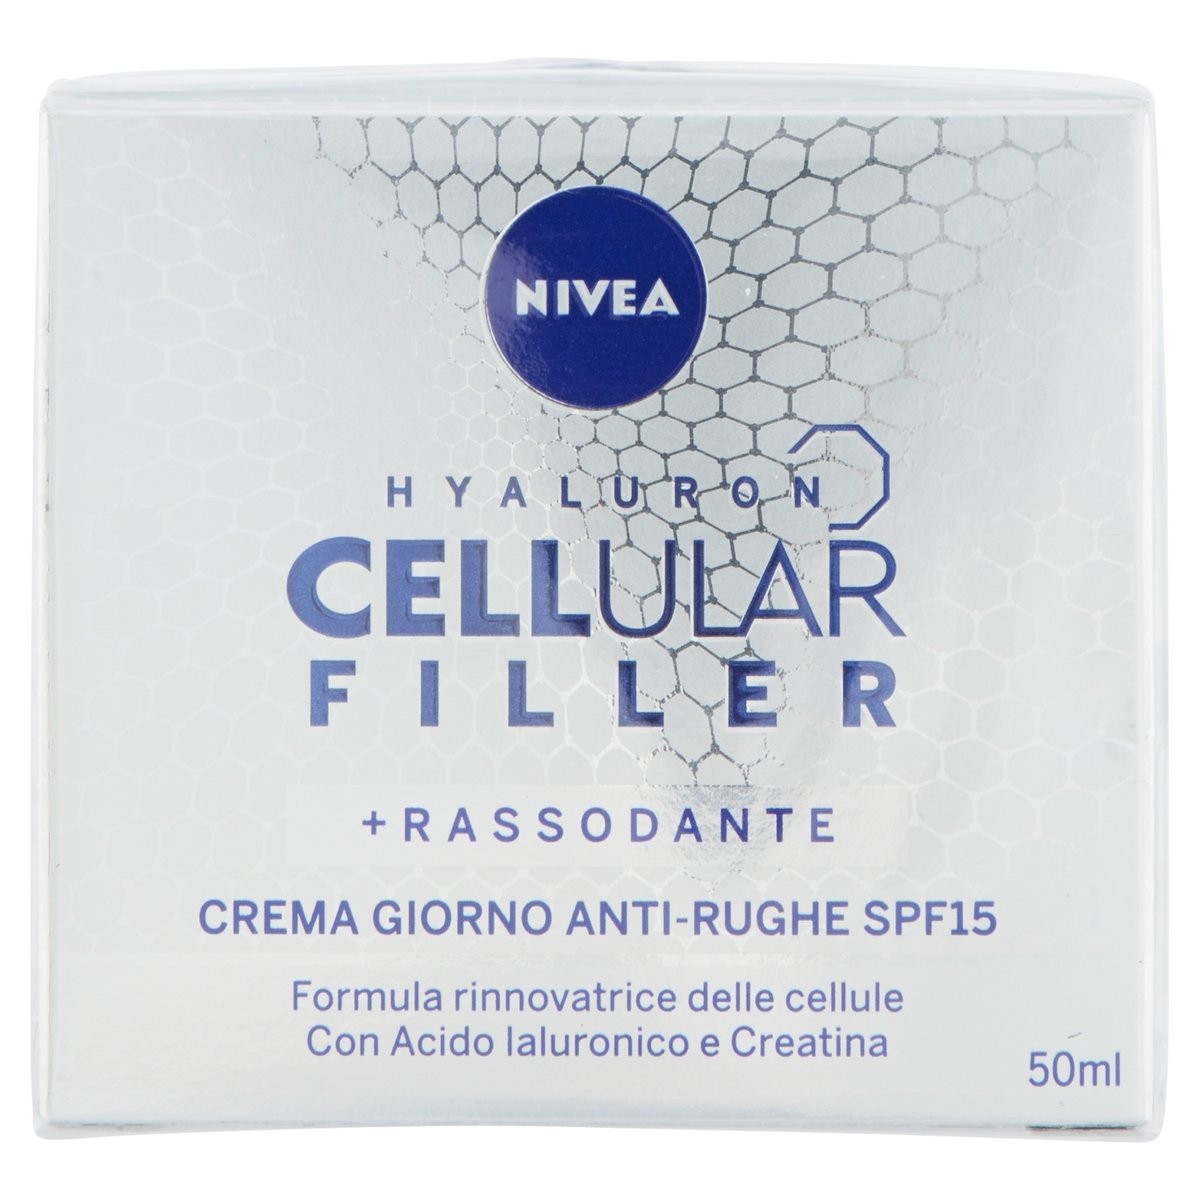 Nivea Hyaluron Cellular Filler Crema giorno antirughe